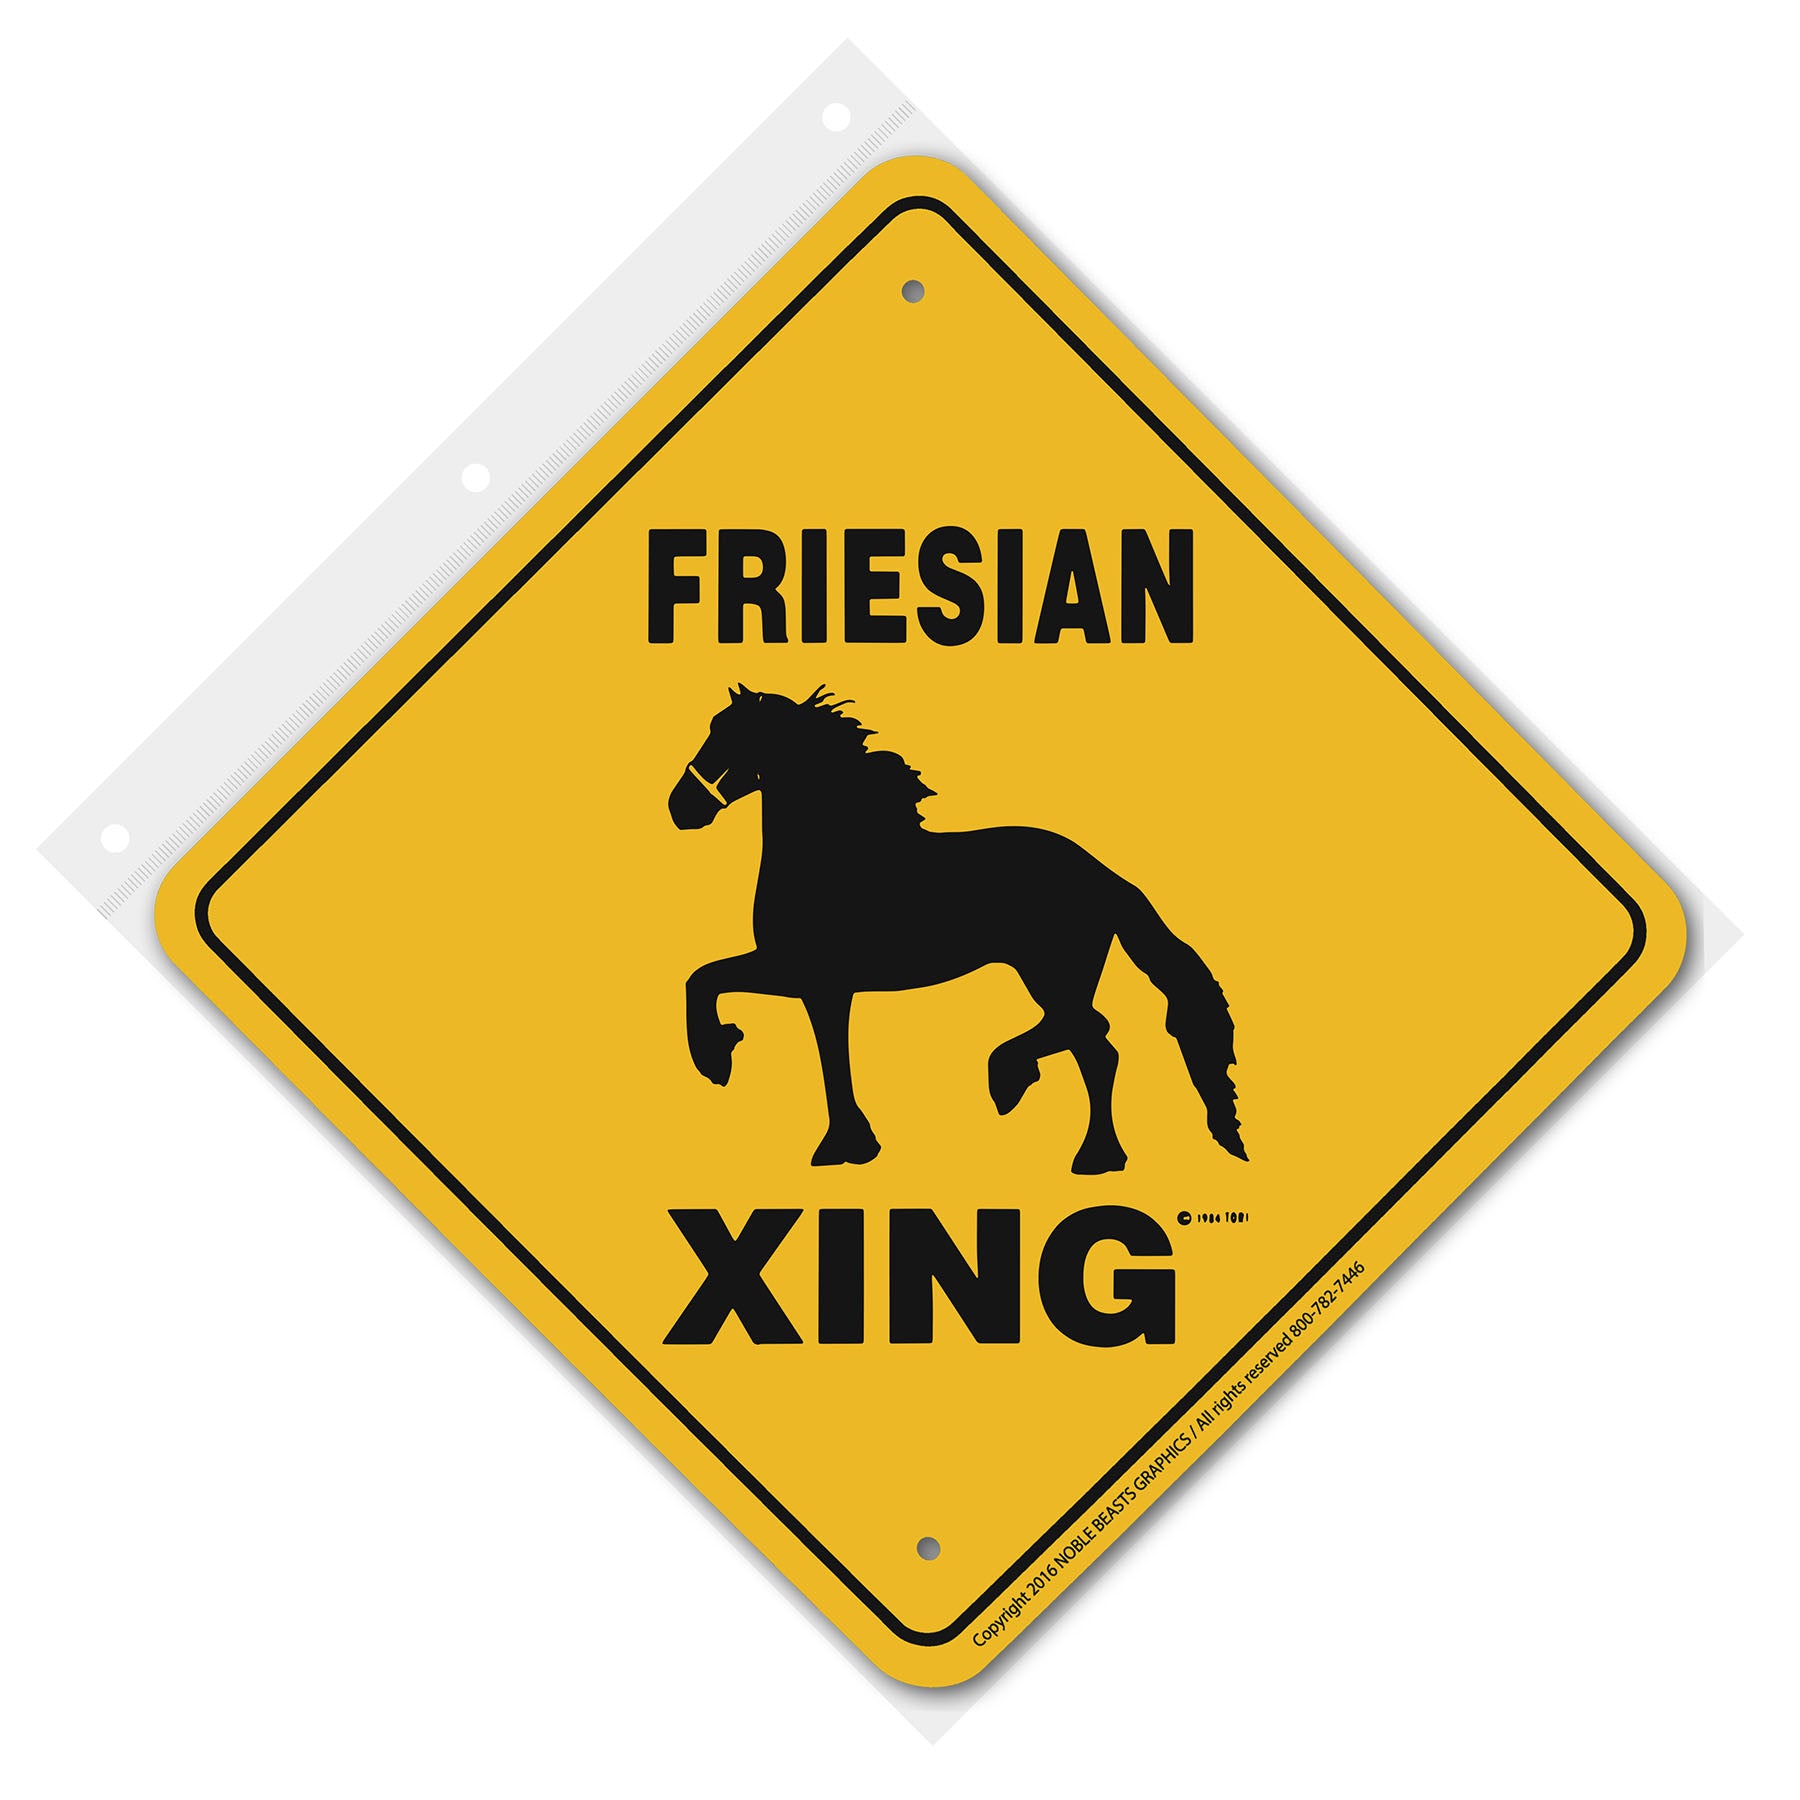 friesian xing 20472 front